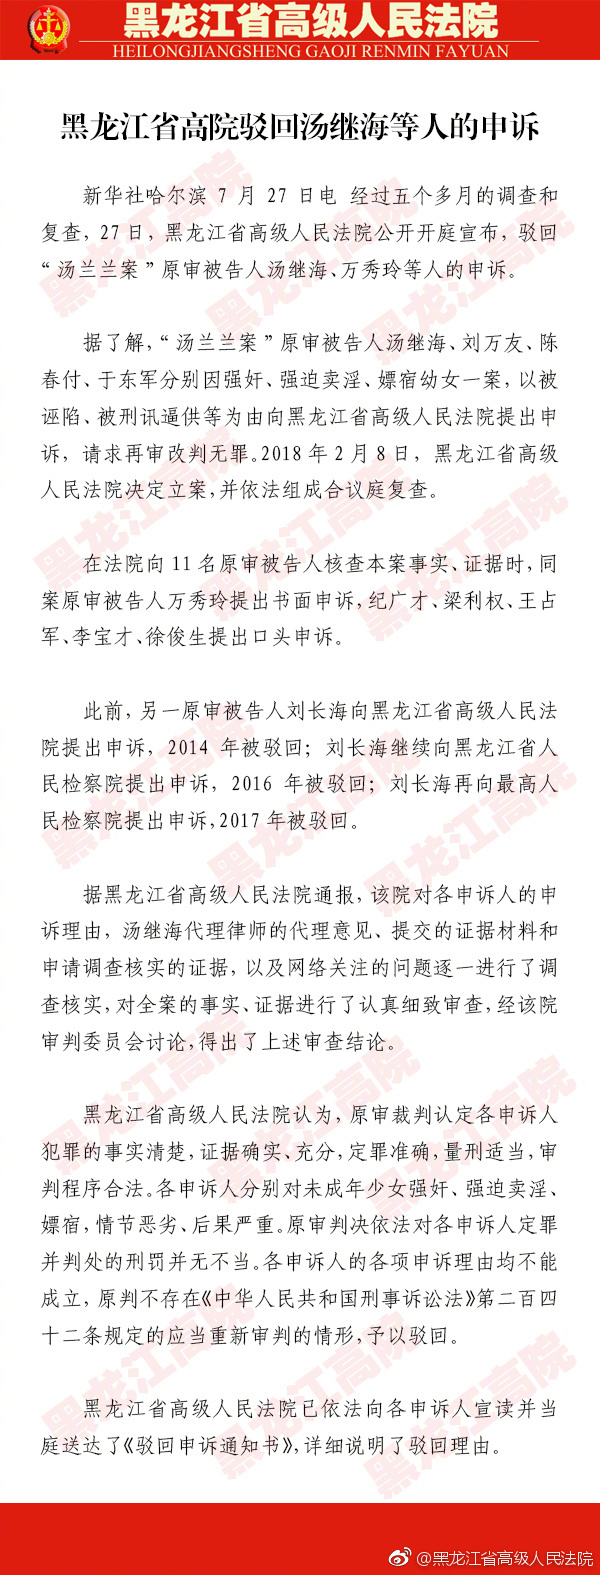 黑龙江高院驳回汤继海等人的申诉